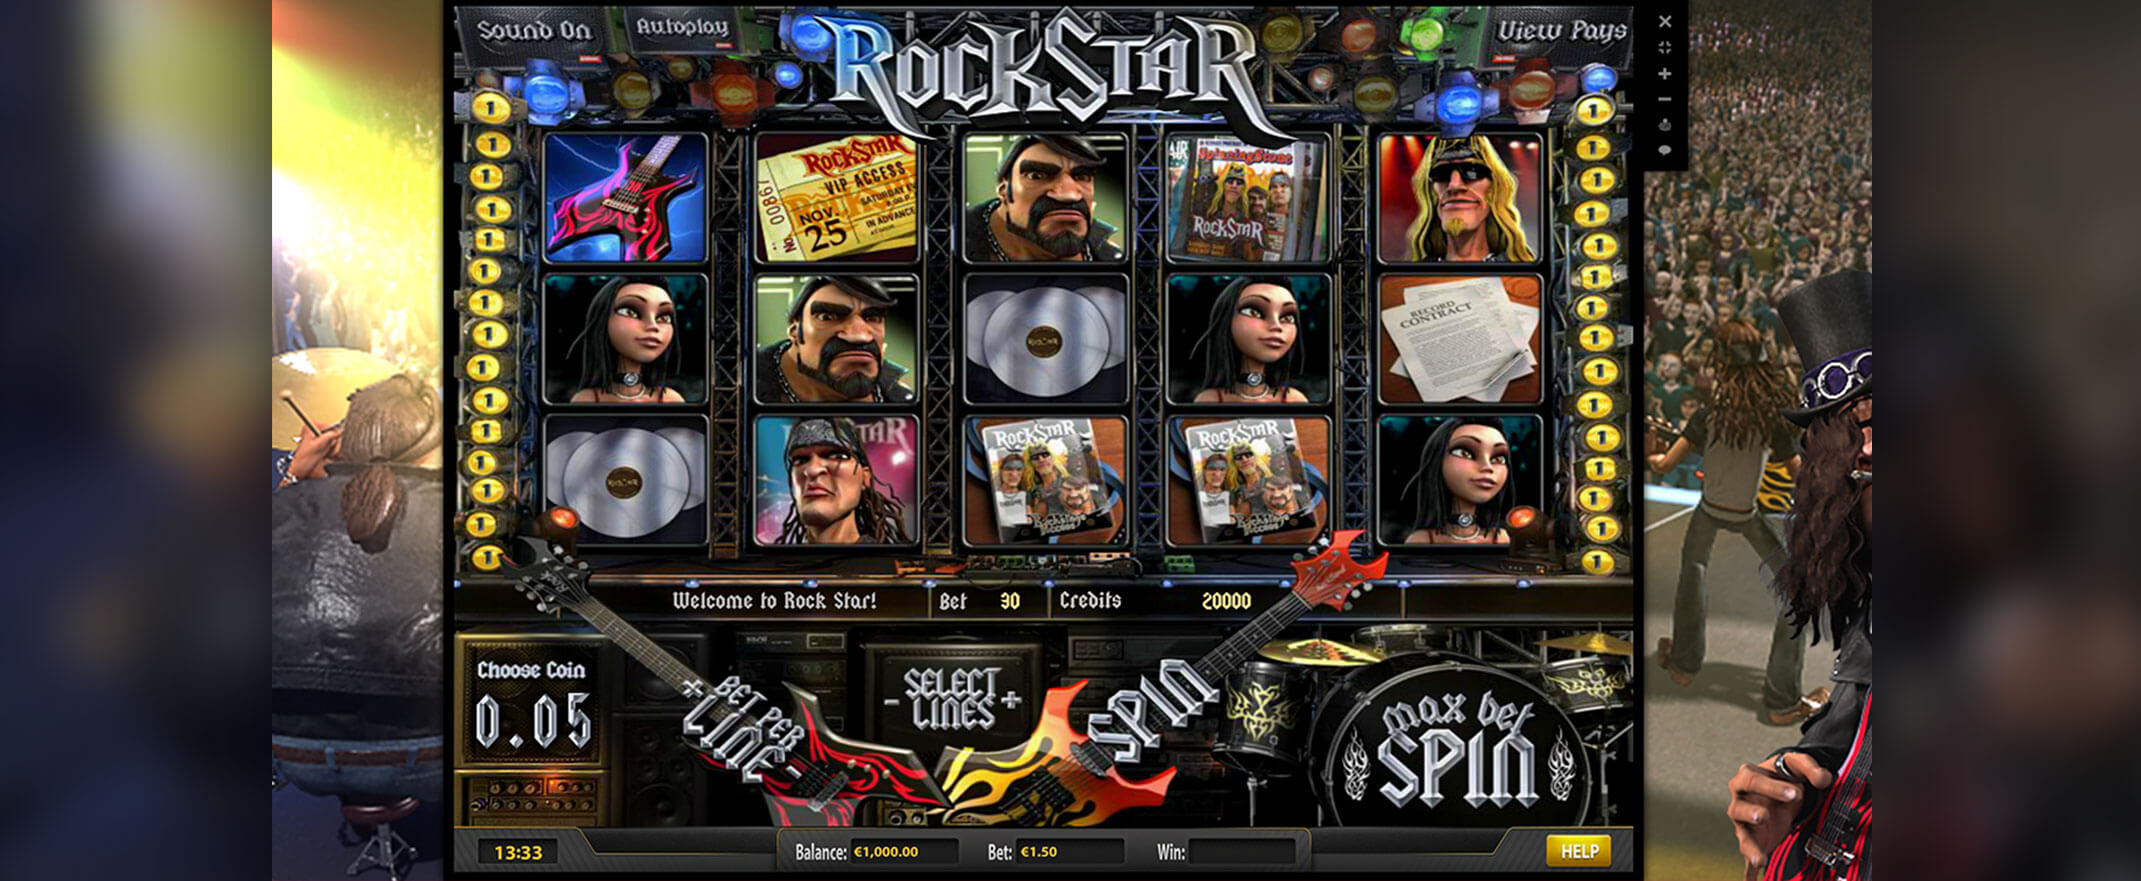 Rockstar peliautomaatti Betsoftilta